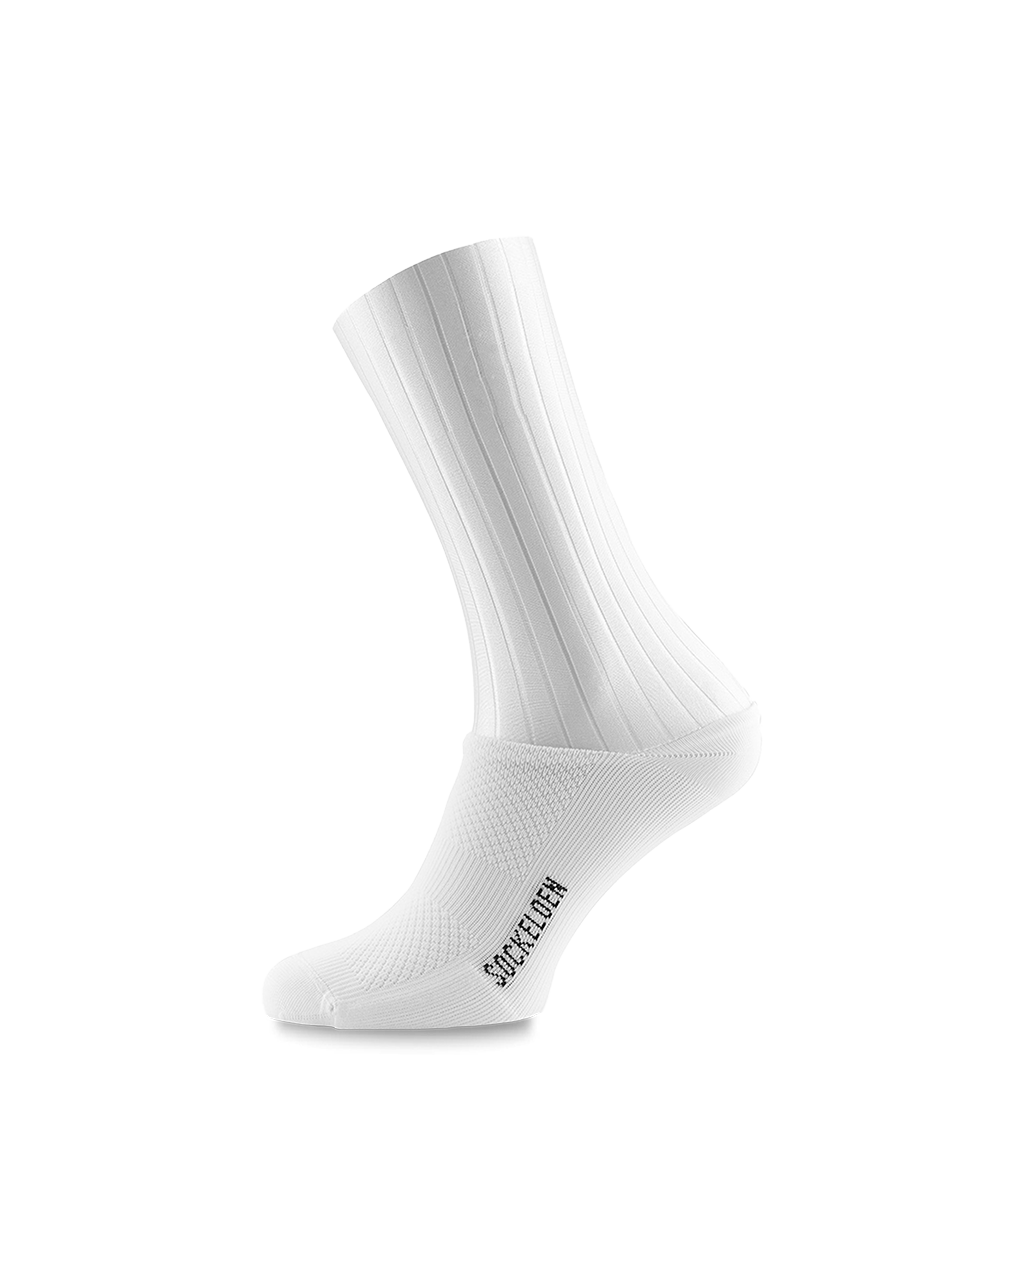 Allwhite-sockeloen-aero-cycling-socks-3-pack